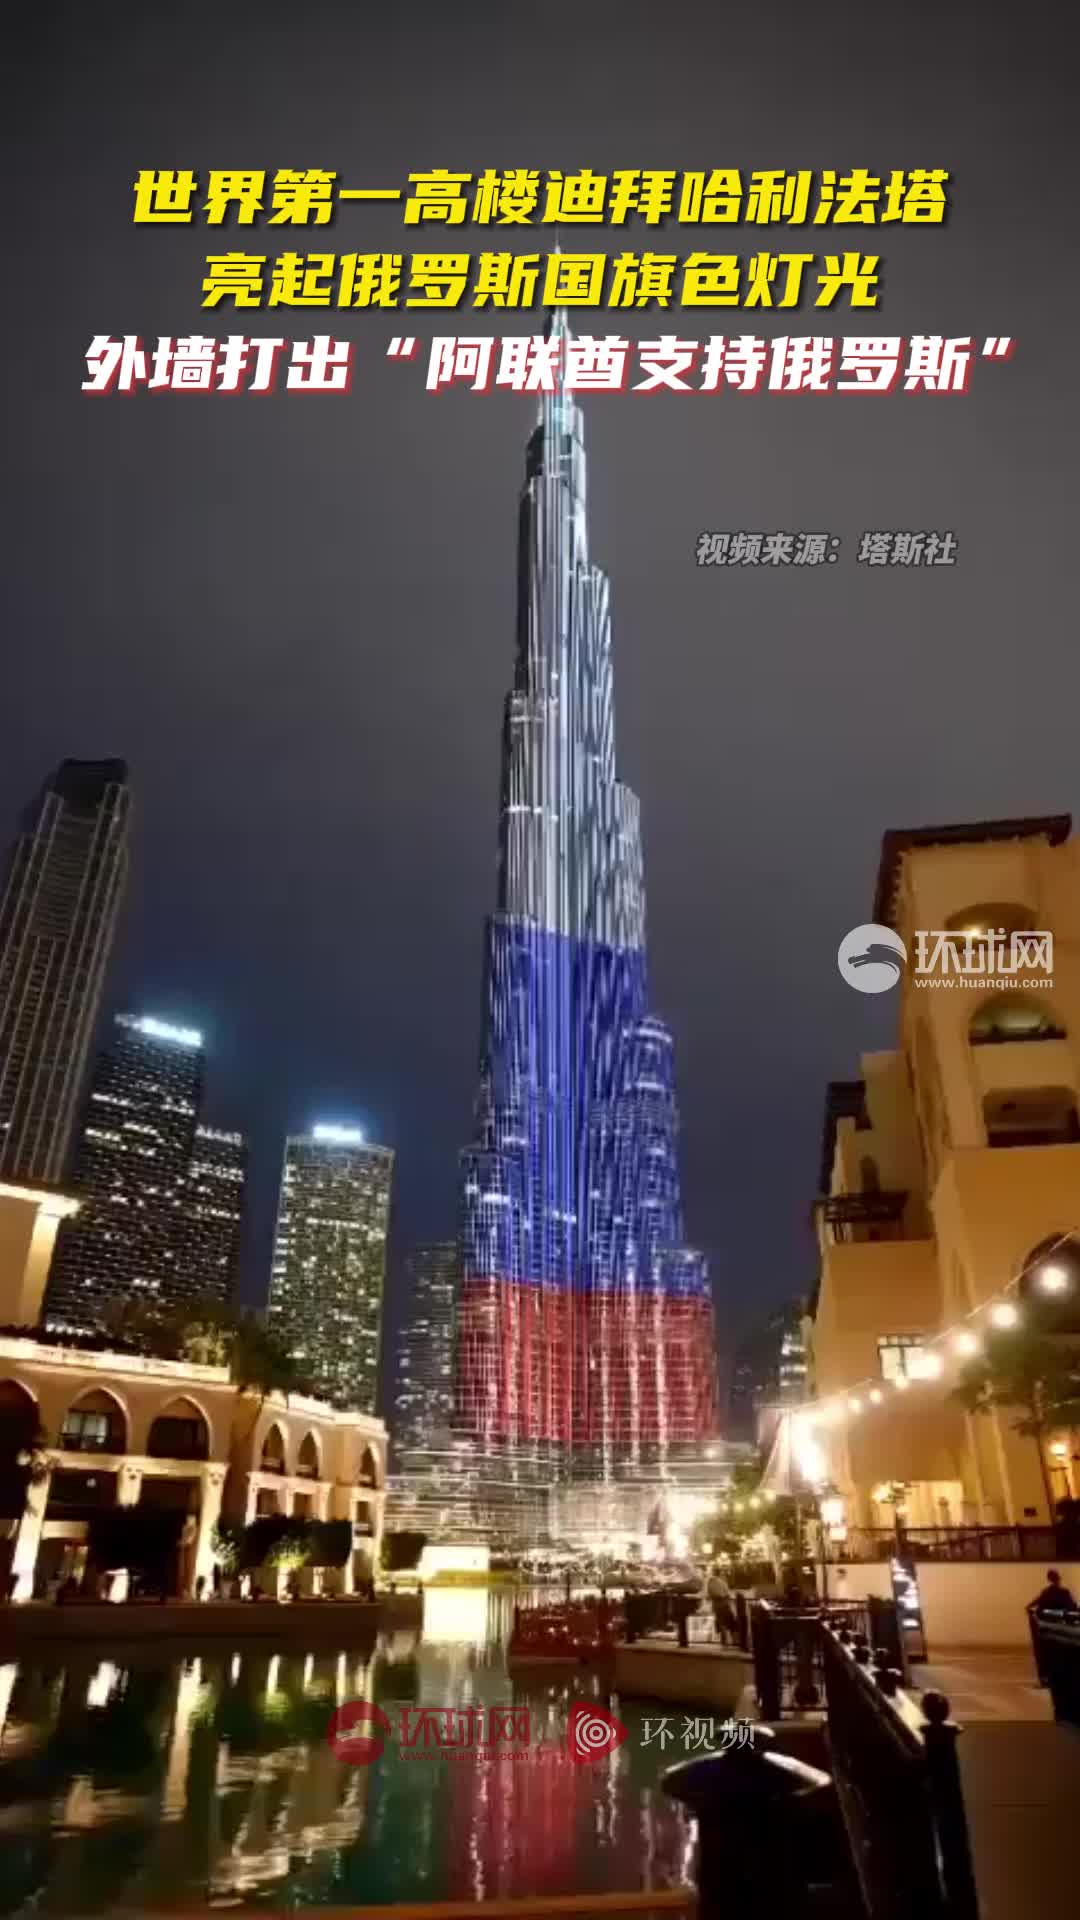 俄媒:世界第一高楼迪拜哈利法塔亮起俄罗斯国旗色灯光,支持俄罗斯